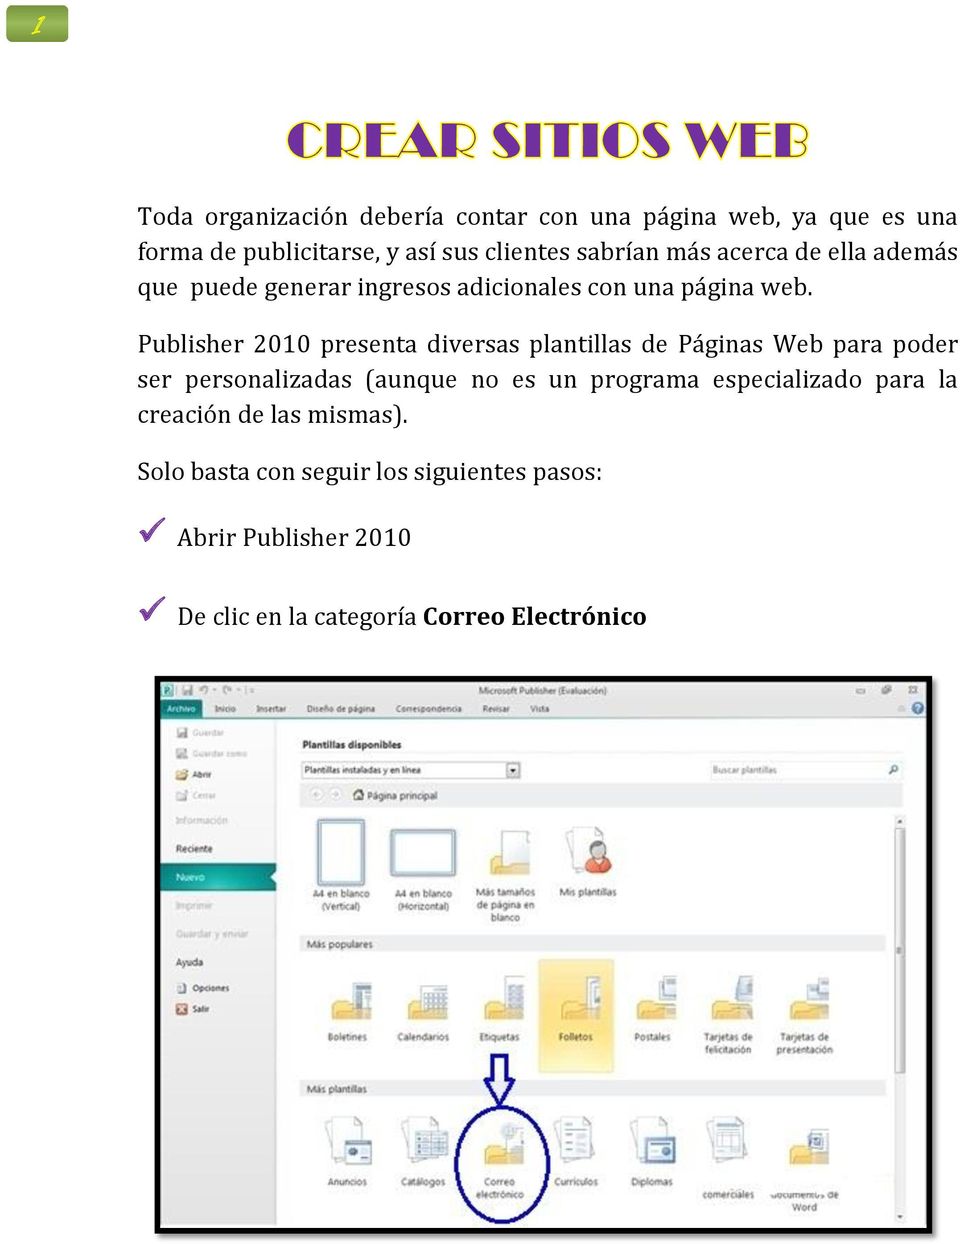 Publisher 2010 presenta diversas plantillas de Páginas Web para poder ser personalizadas (aunque no es un programa